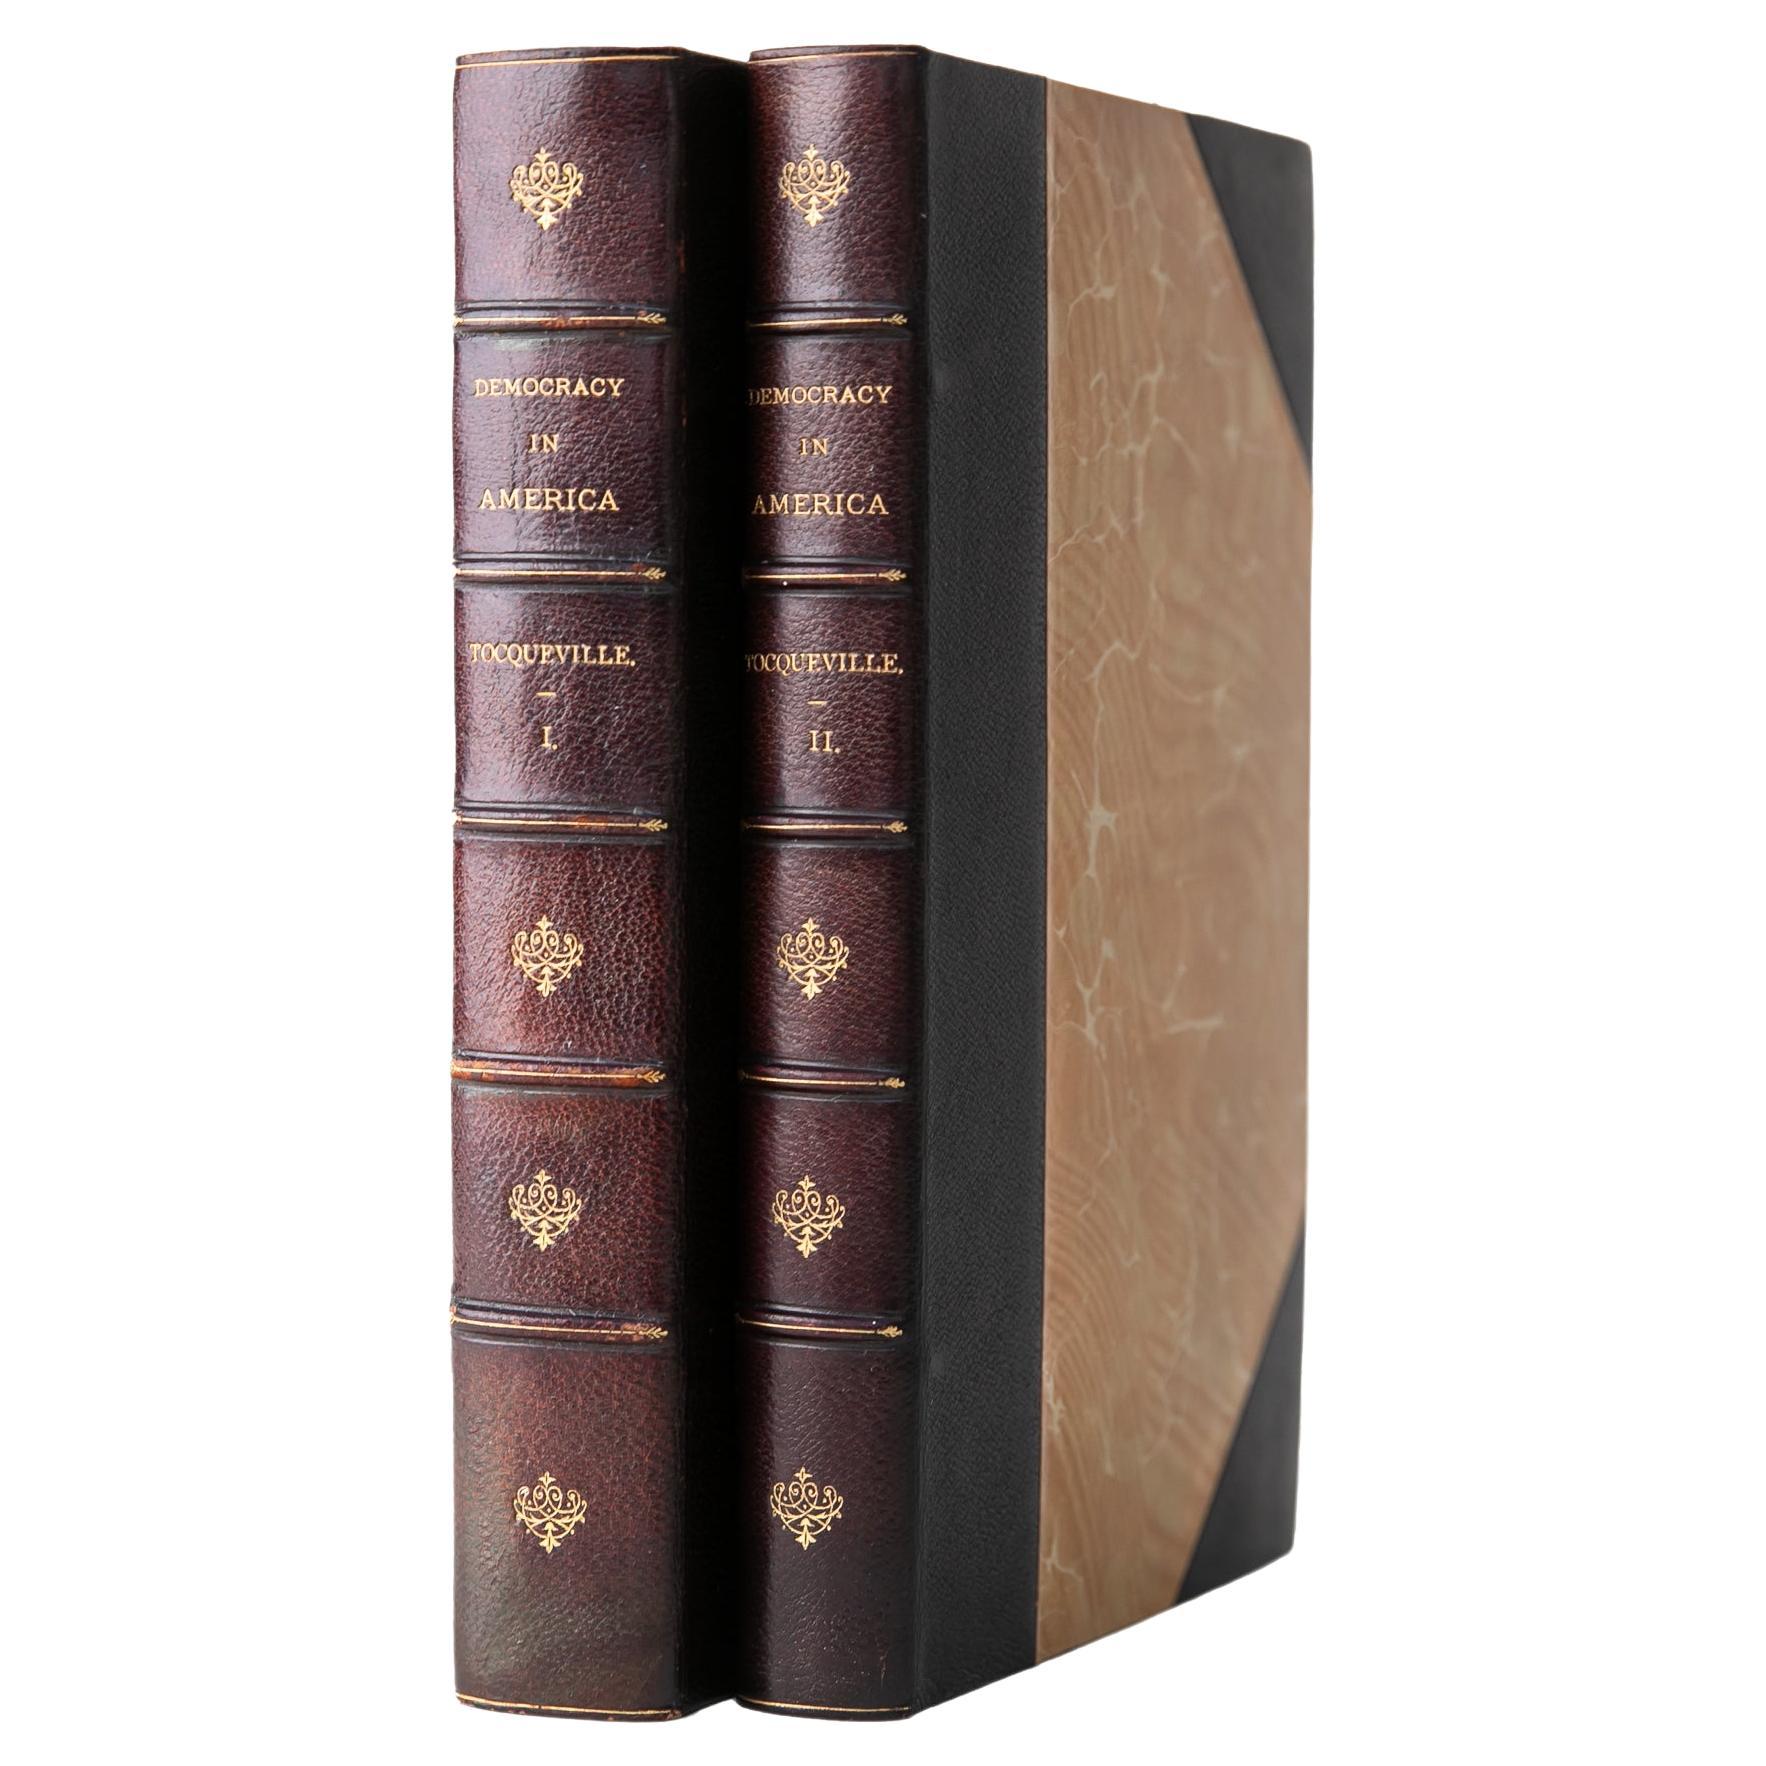 2 Volumes. Alexis de Tocqueville, Democracy in America.